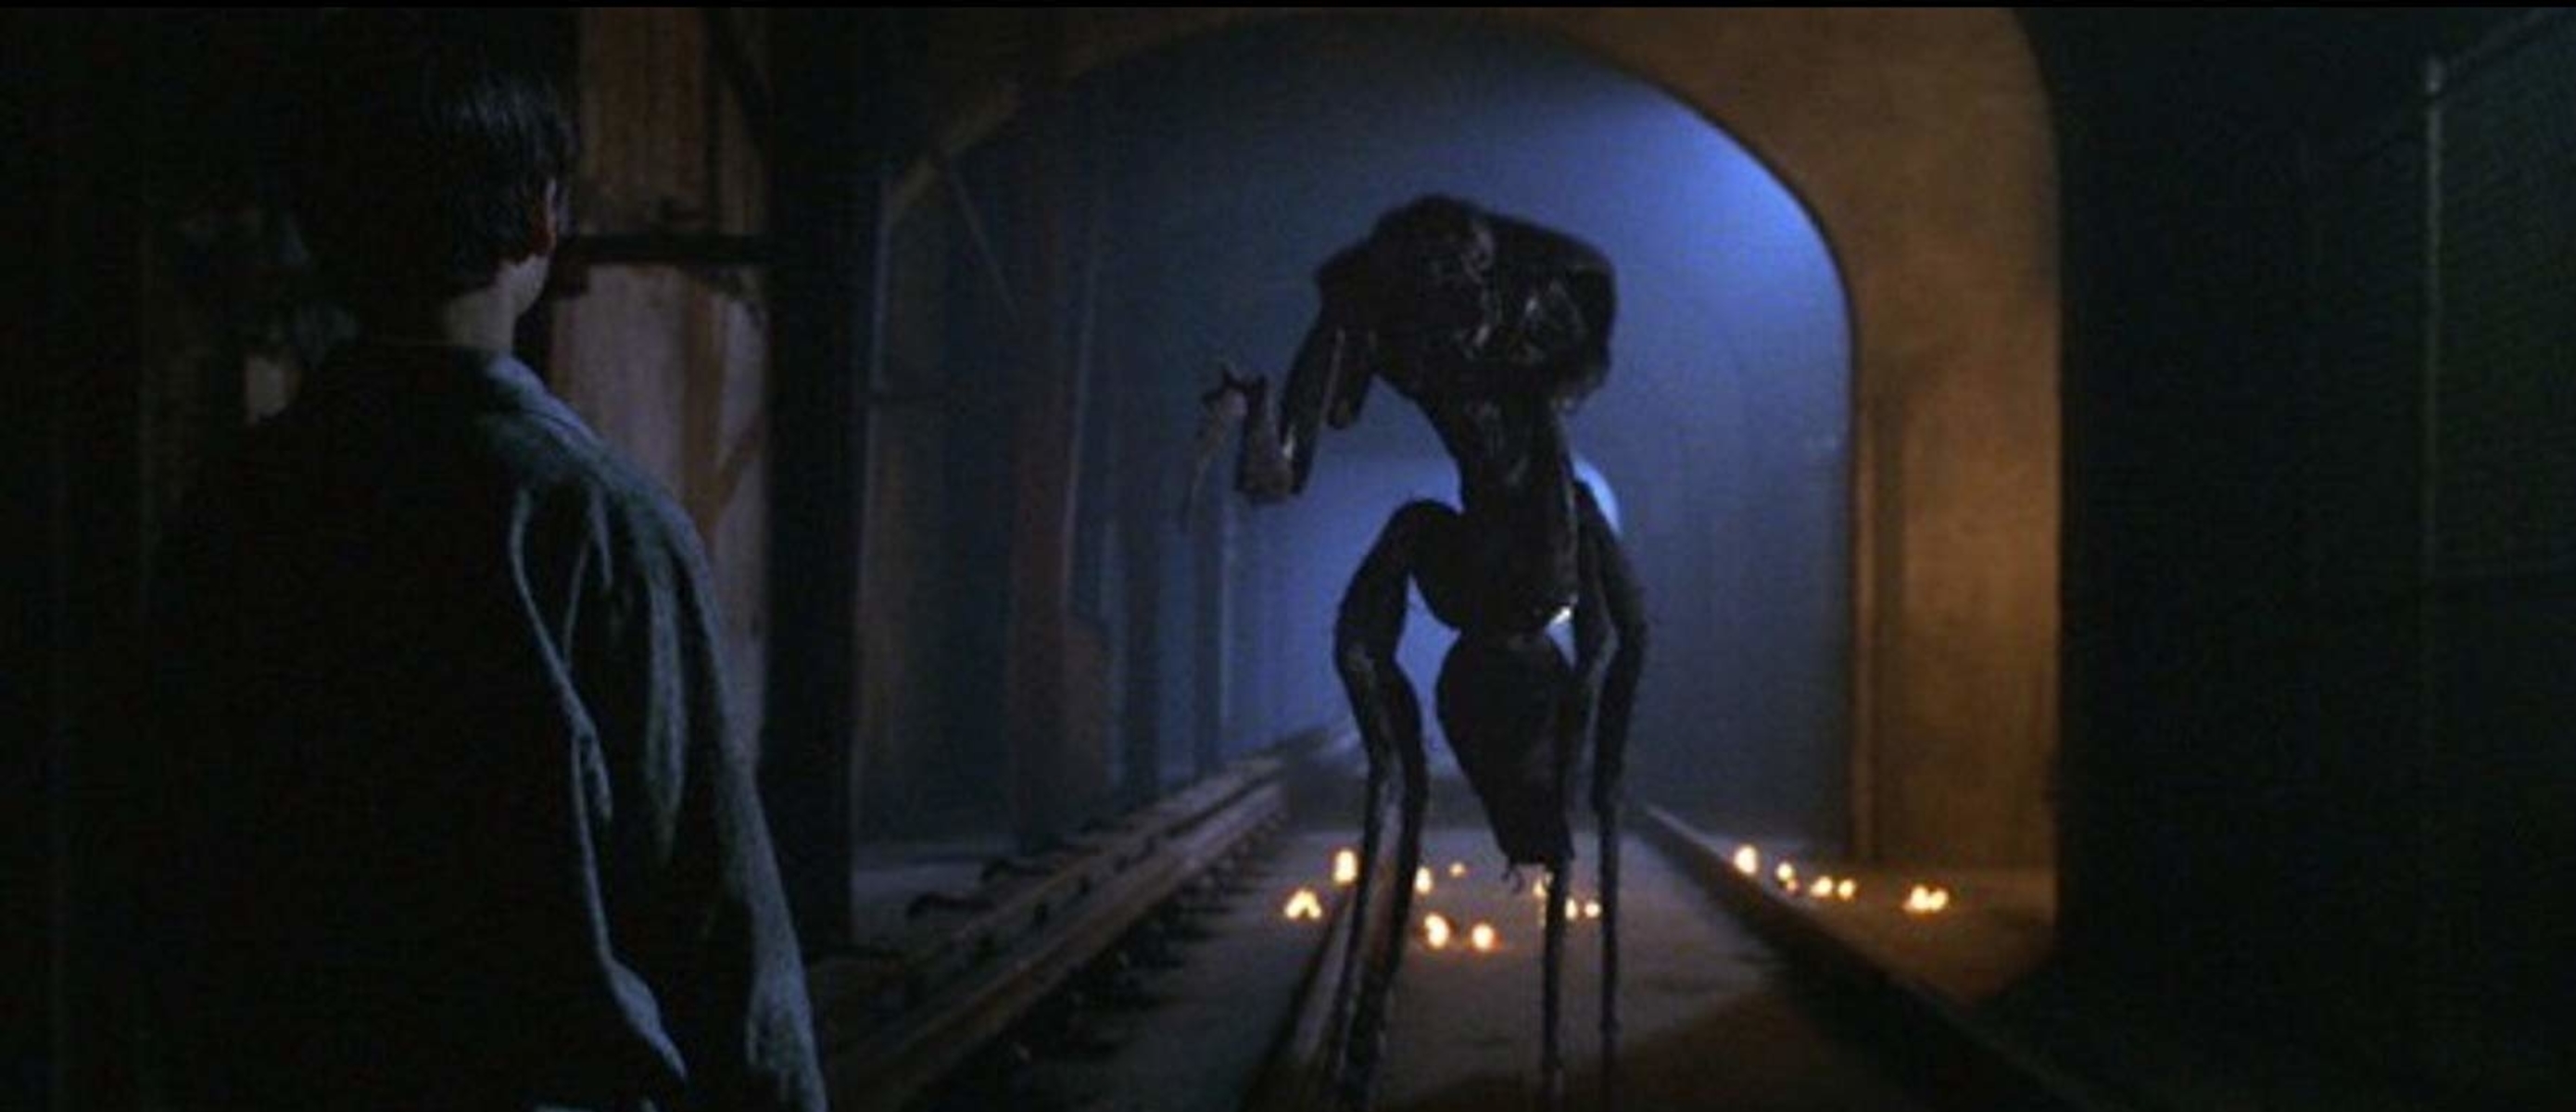 Монстр похищающий детей. Мутанты Гильермо дель Торо, 1997. Мутанты (1997, реж. Г.дель Торо).